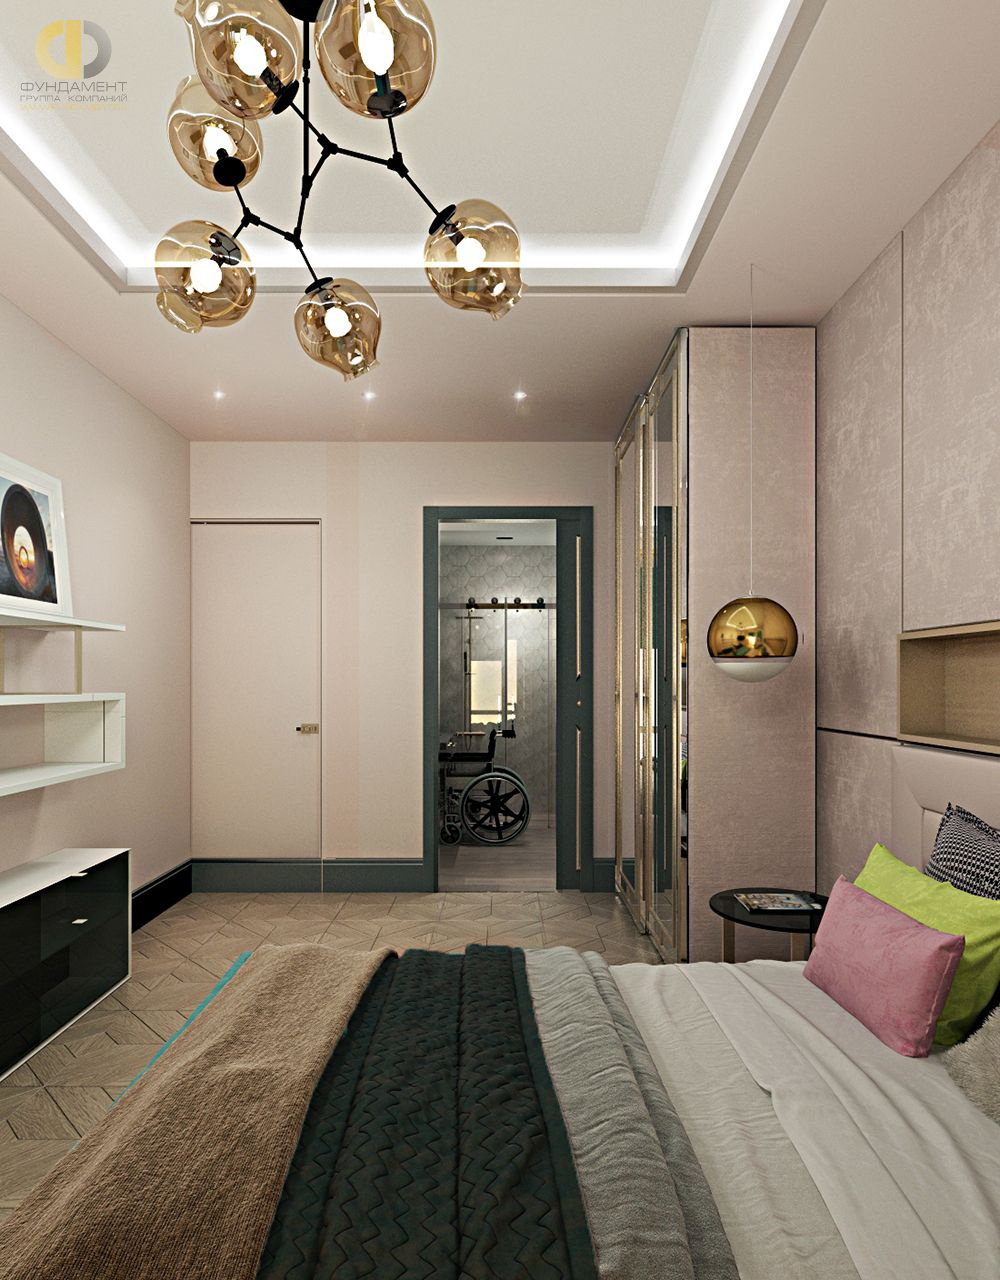 Спальня в стиле дизайна фьюжн по адресу МО, г. Химки, ул. Кудрявцева, д. 14, 2018 года